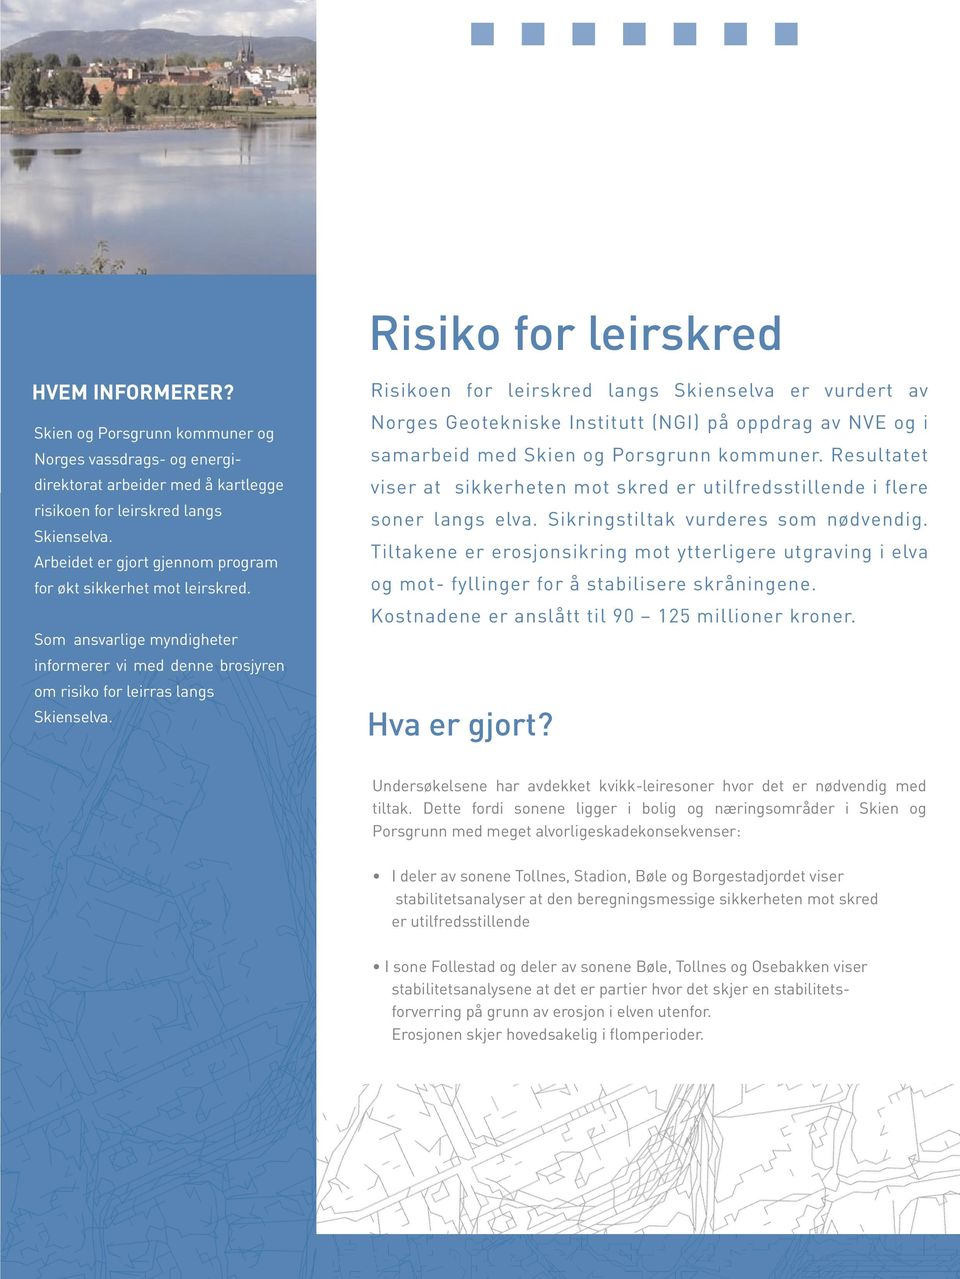 Risikoen for leirskred langs Skienselva er vurdert av Norges Geotekniske Institutt (NGI) på oppdrag av NVE og i samarbeid med Skien og Porsgrunn kommuner.